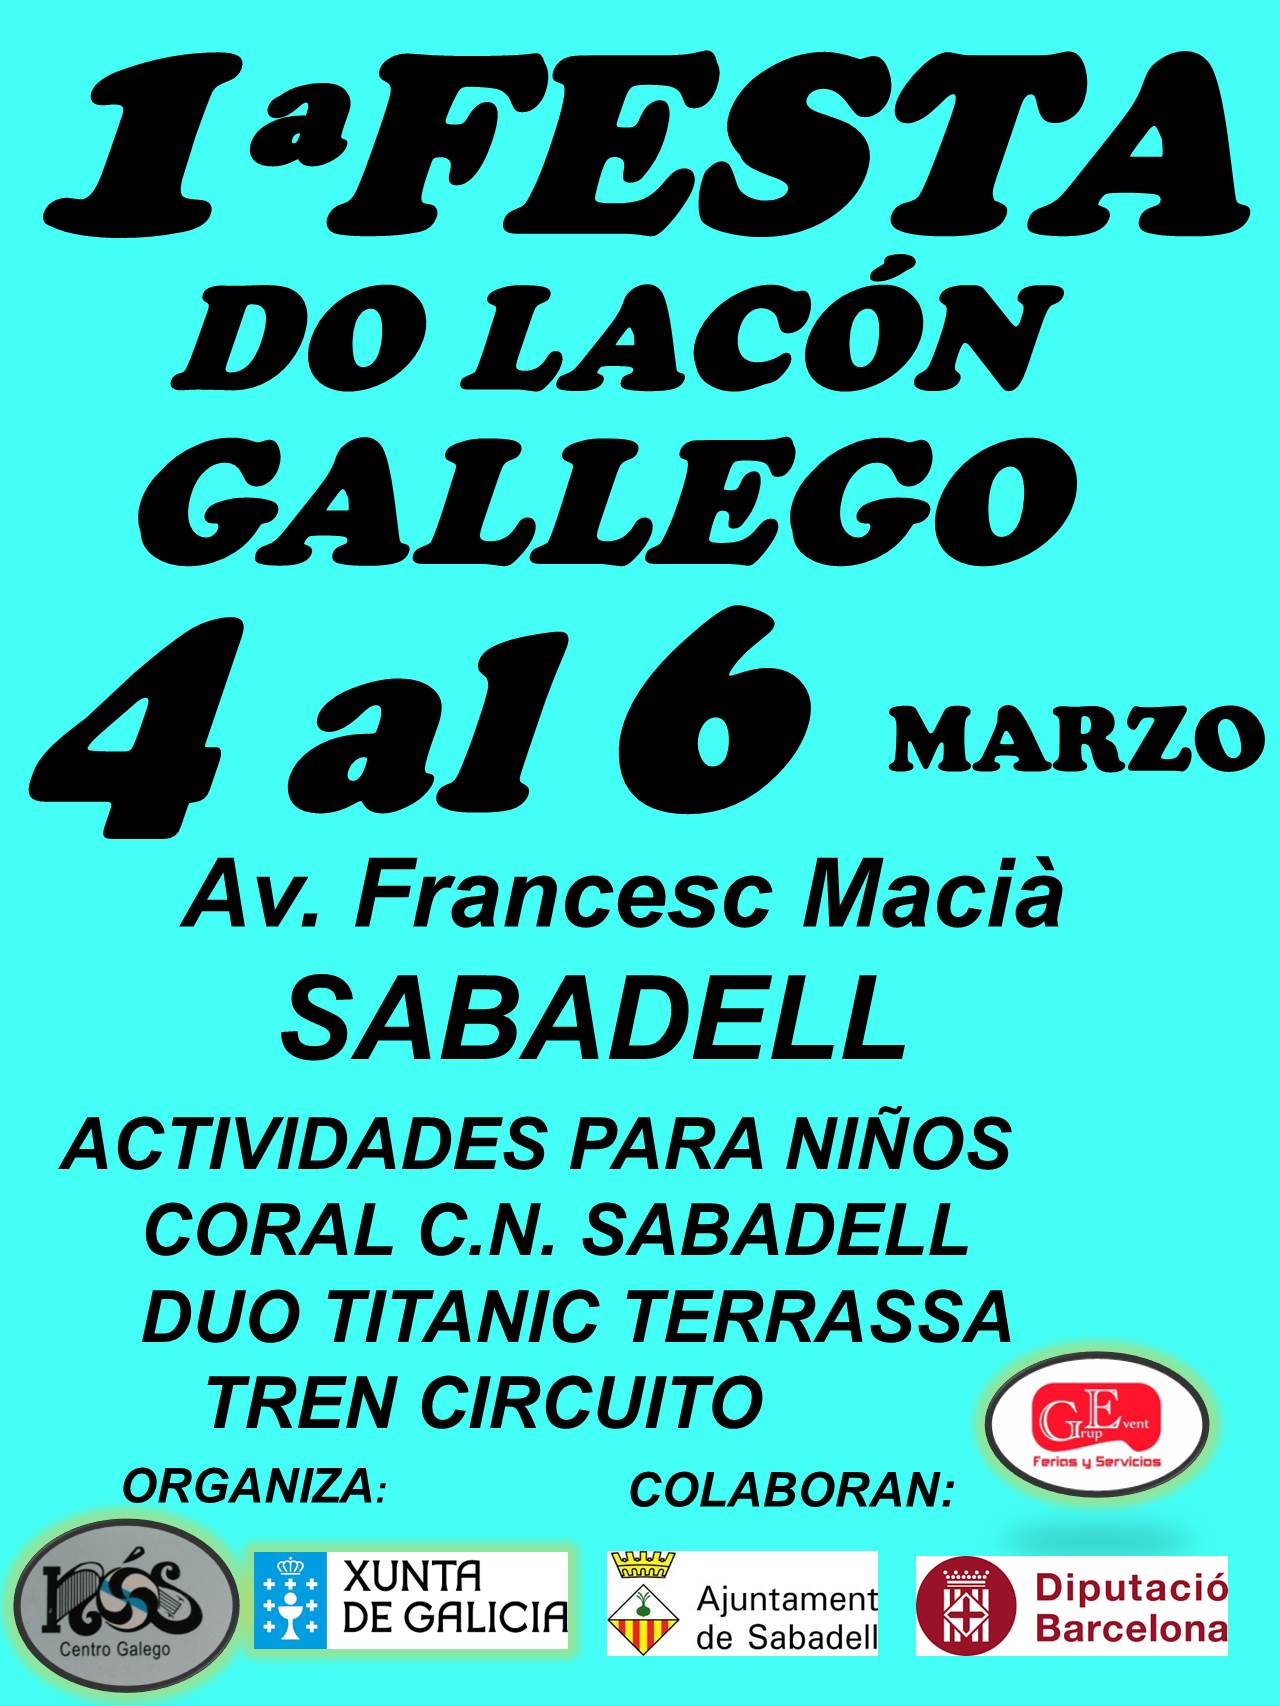 Feria del lacon gallego del 04 al 06 de Marzo del 2016 en Sabadell, Barcelona